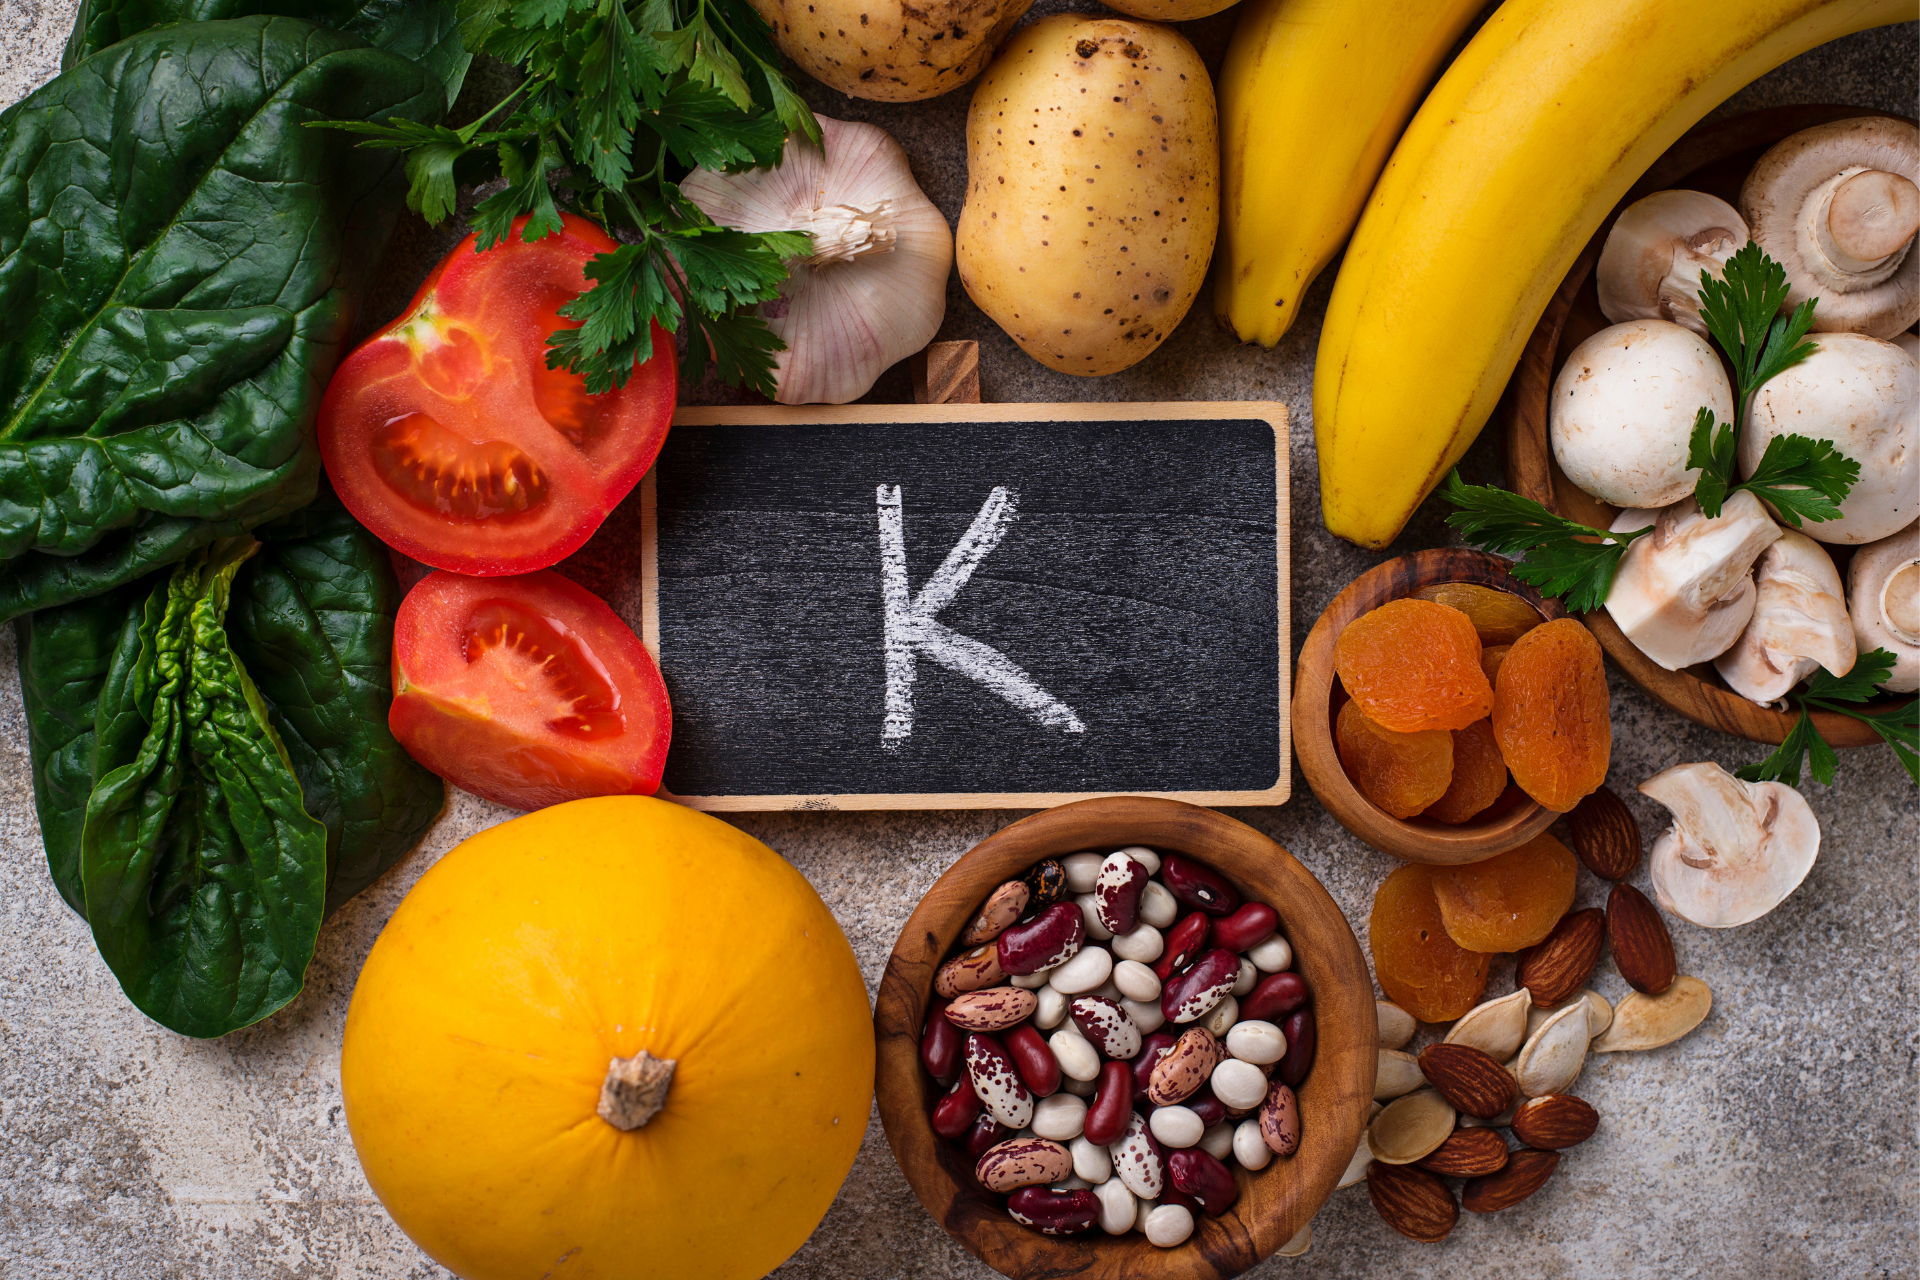 Ĉu vi scias, ke vitamino k2 estas utila por kalcia suplemento?